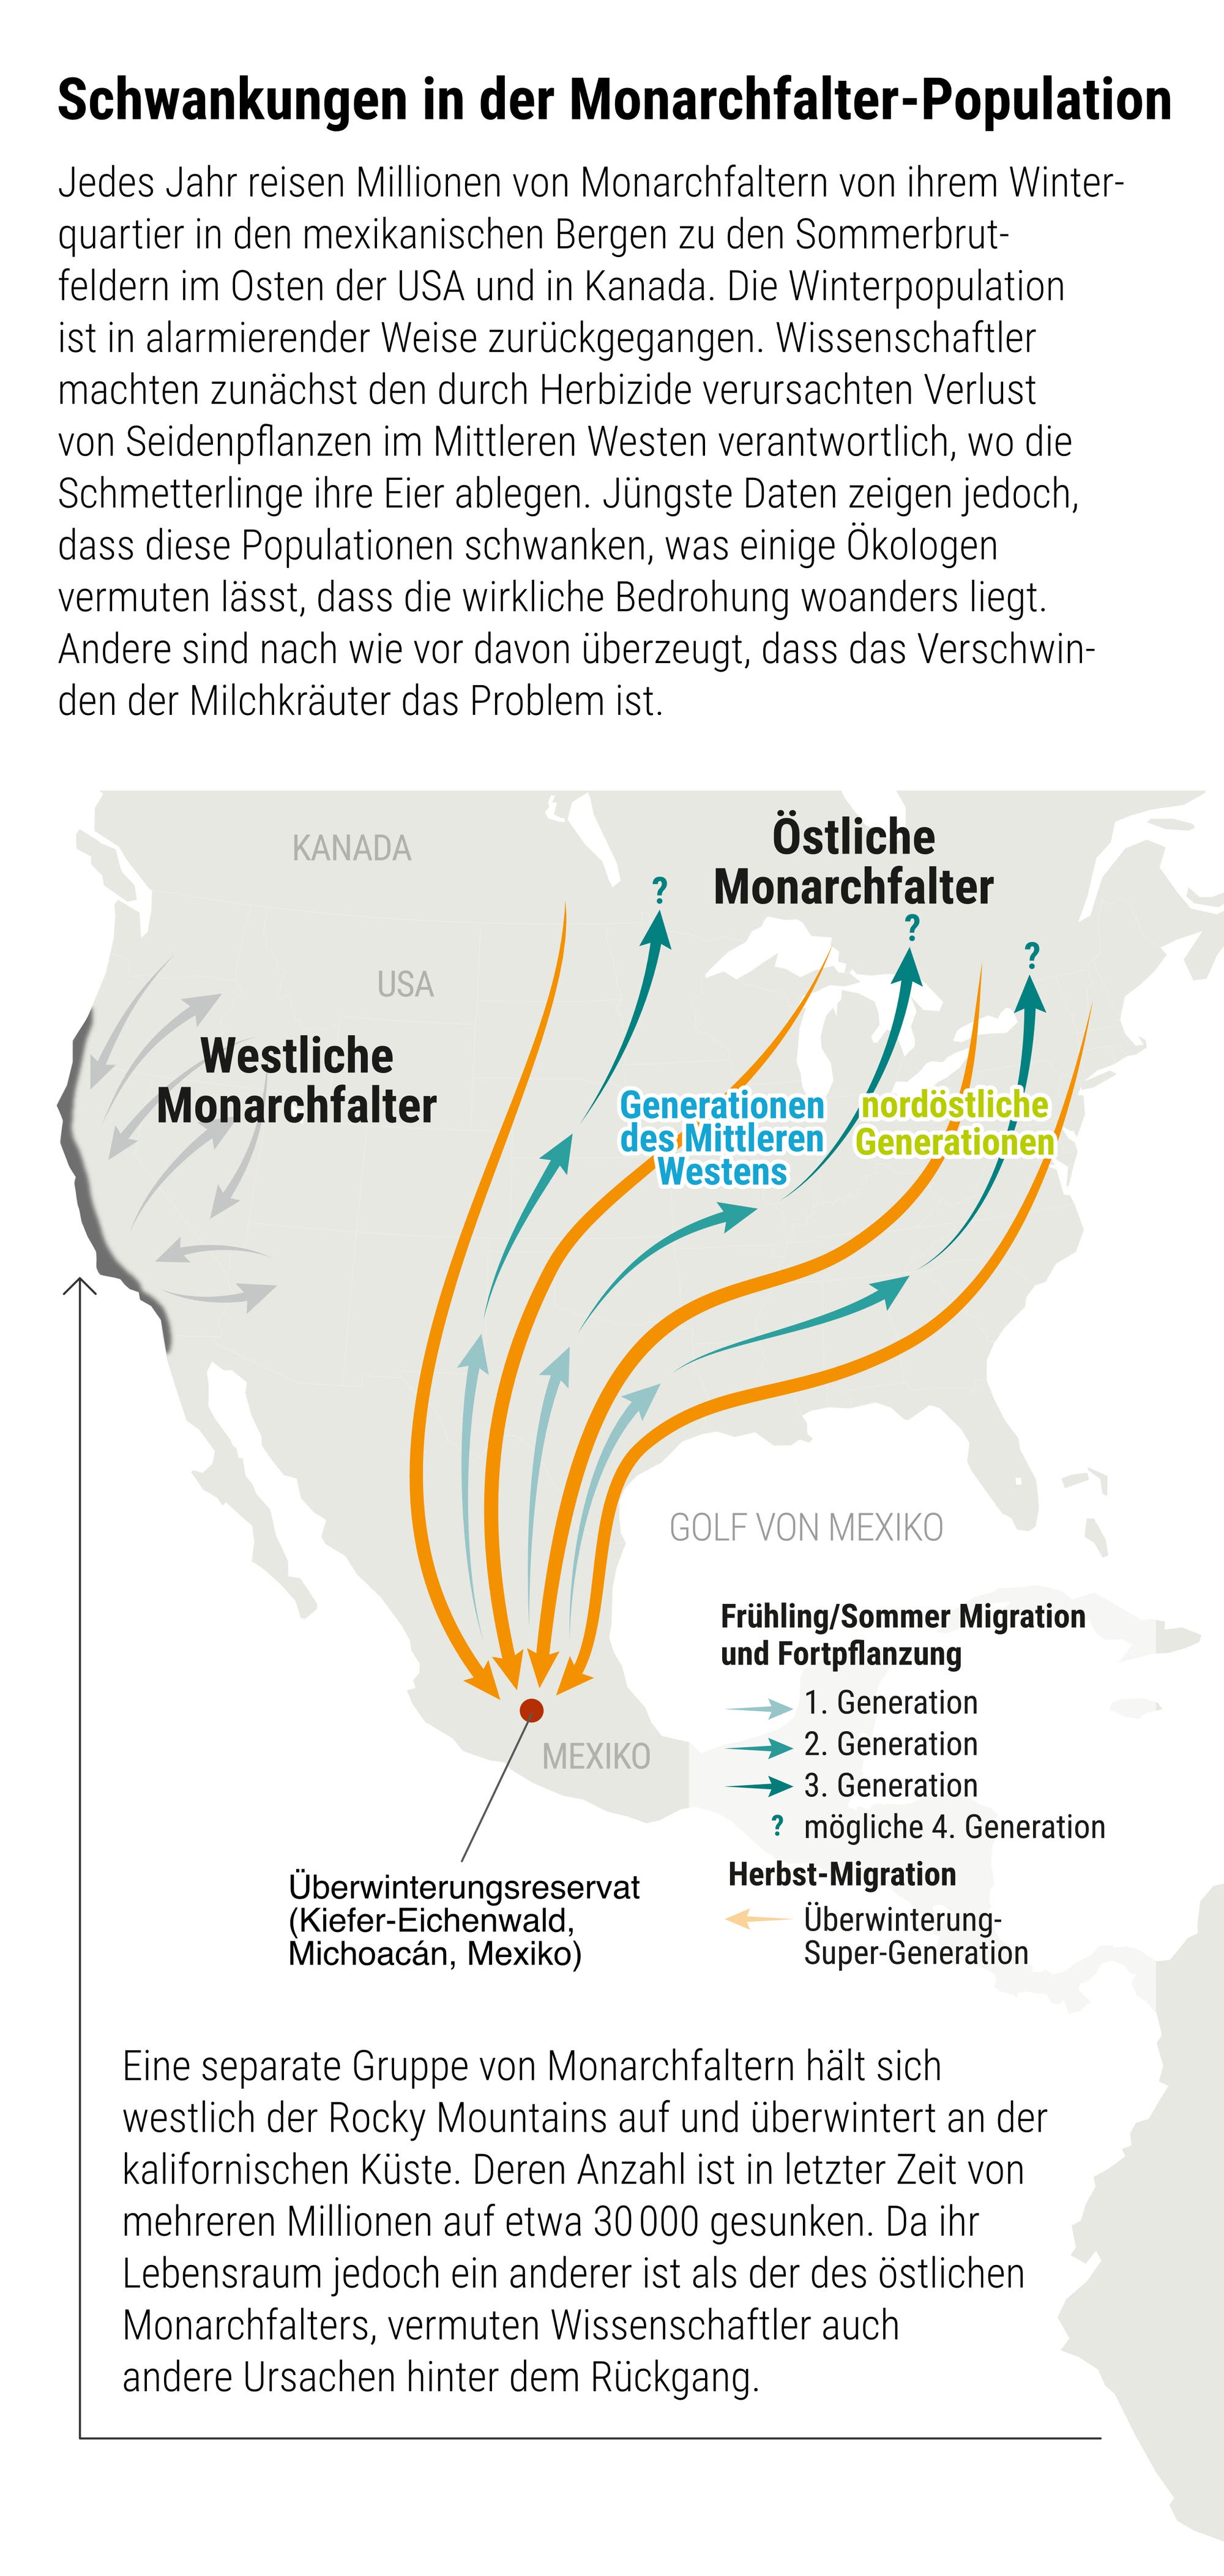 Die Wanderwege der Monarchfalter aus den USA nach Mexiko und zurück.